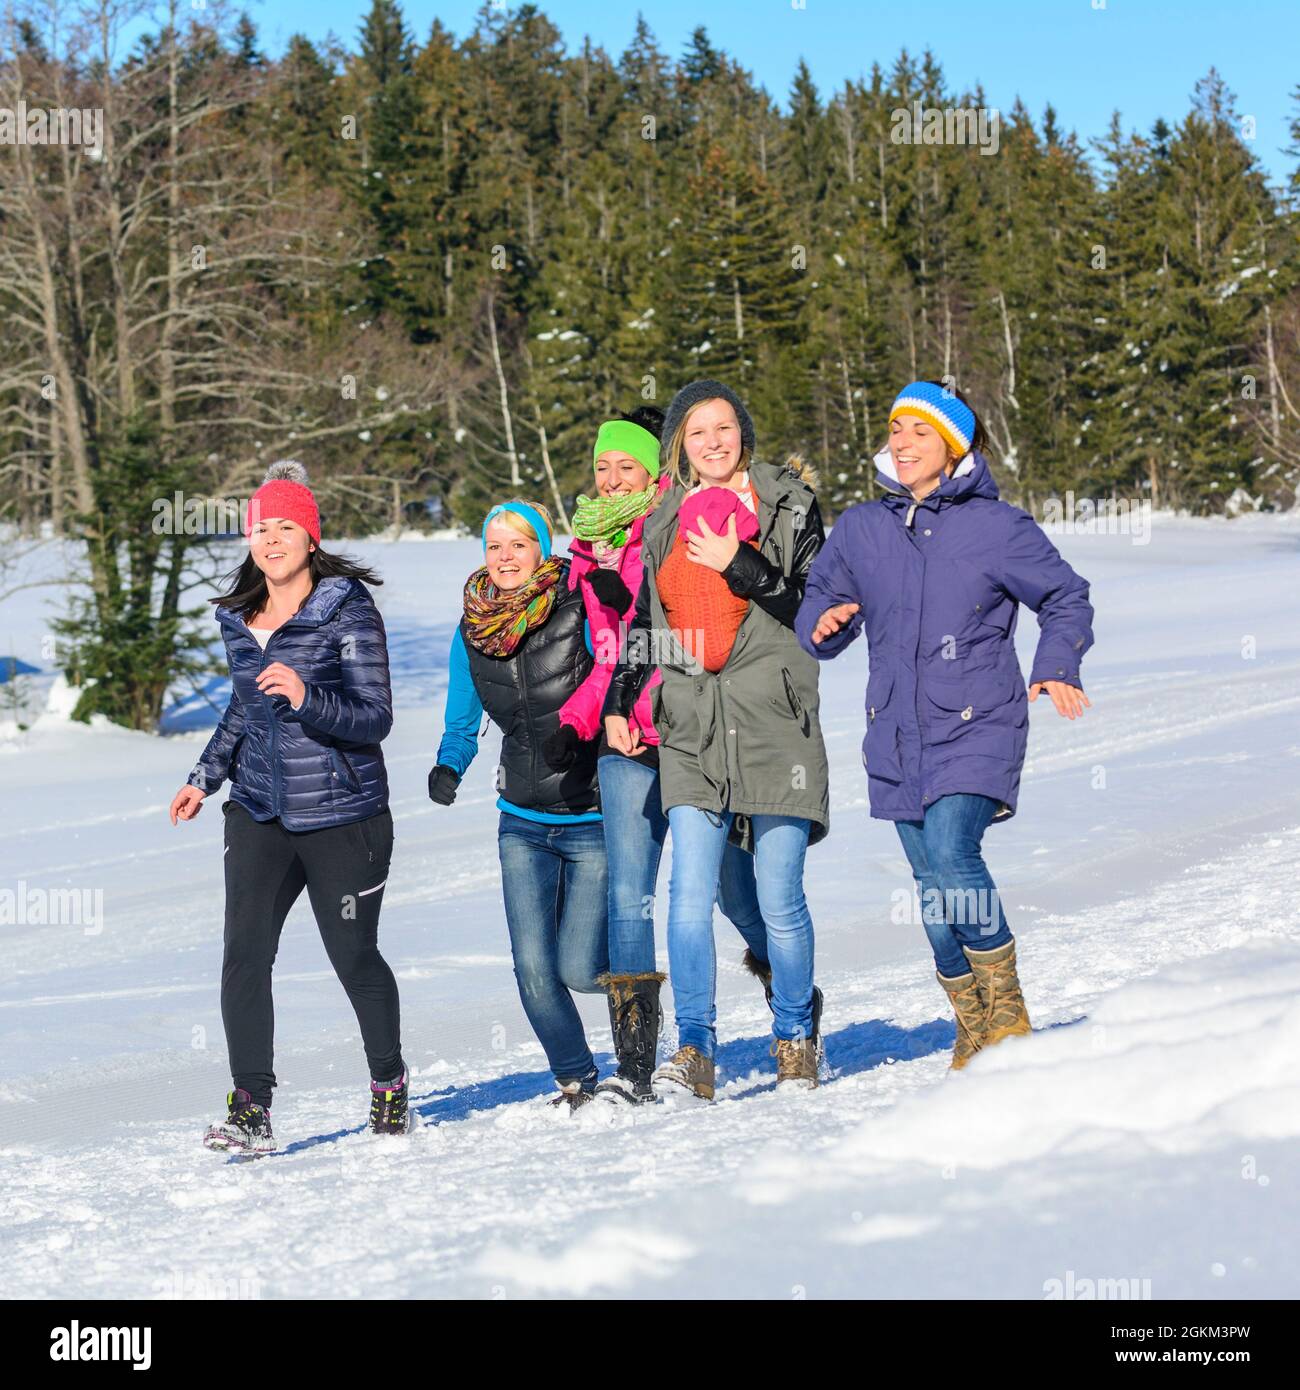 Un pomeriggio con le amiche nella neve, passeggiata invernale in una giornata invernale soleggiata e fredda Foto Stock